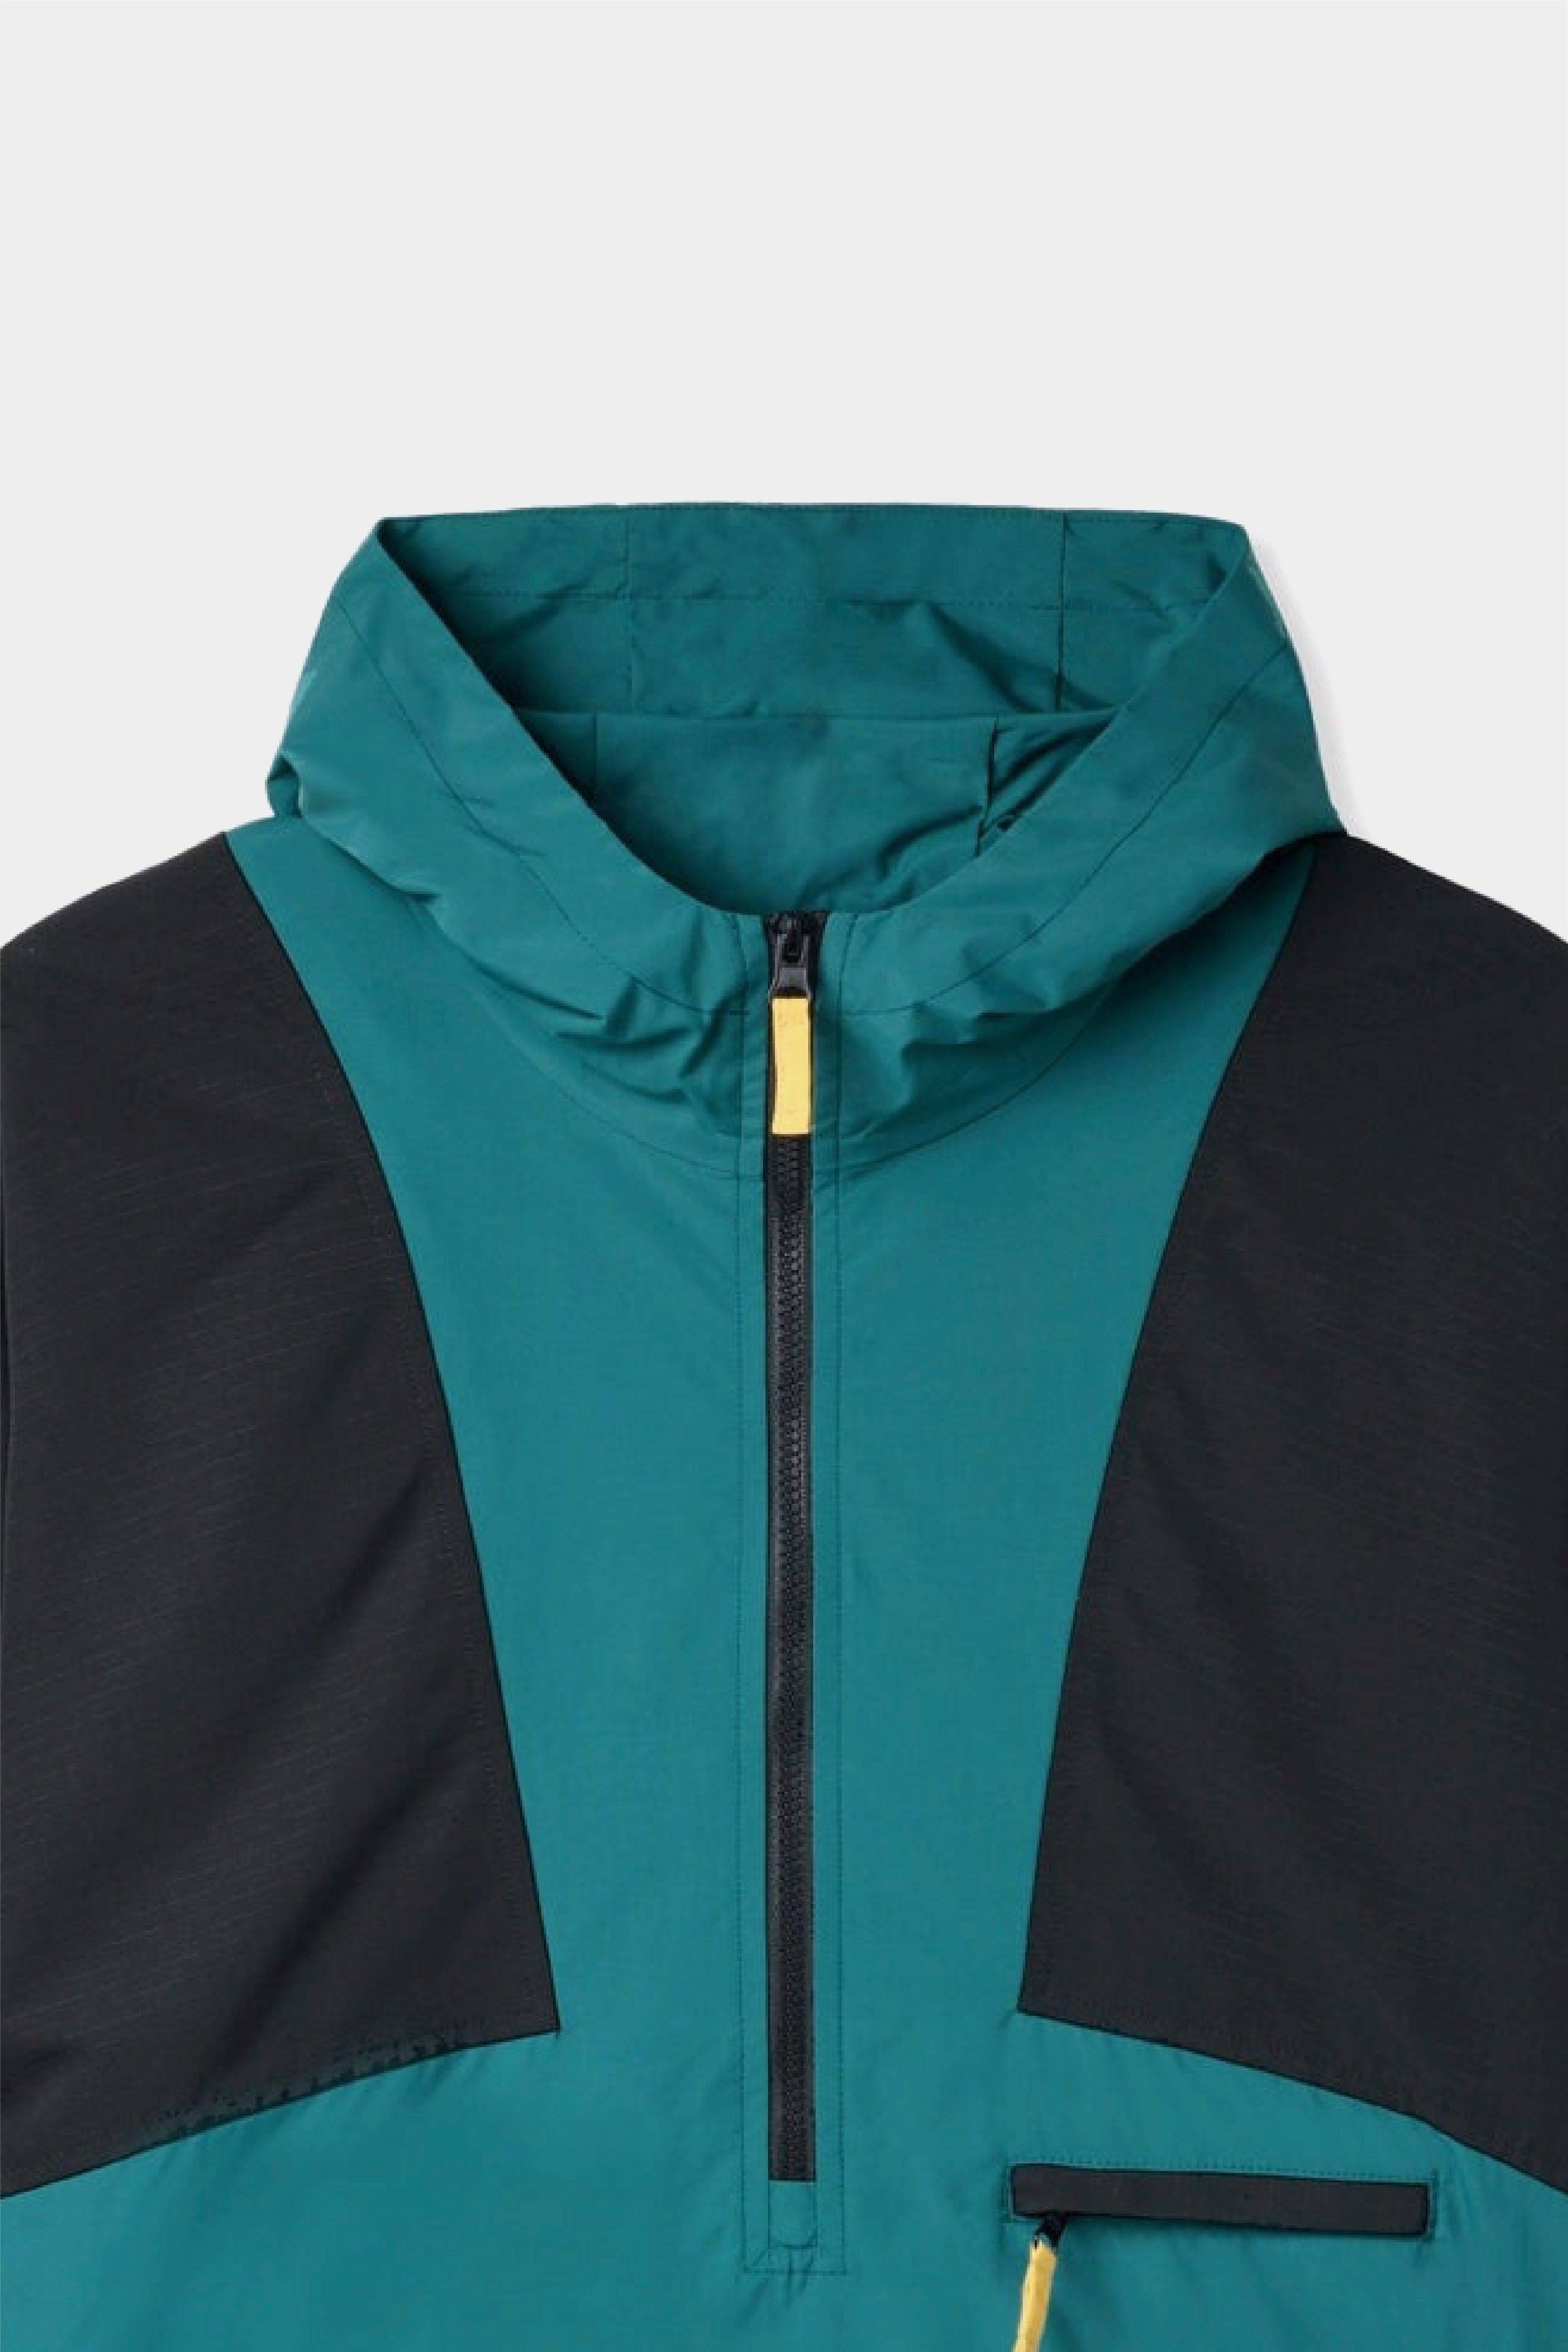 Selectshop FRAME - BUTTER GOODS Terrain Jacket Outerwear Concept Store Dubai